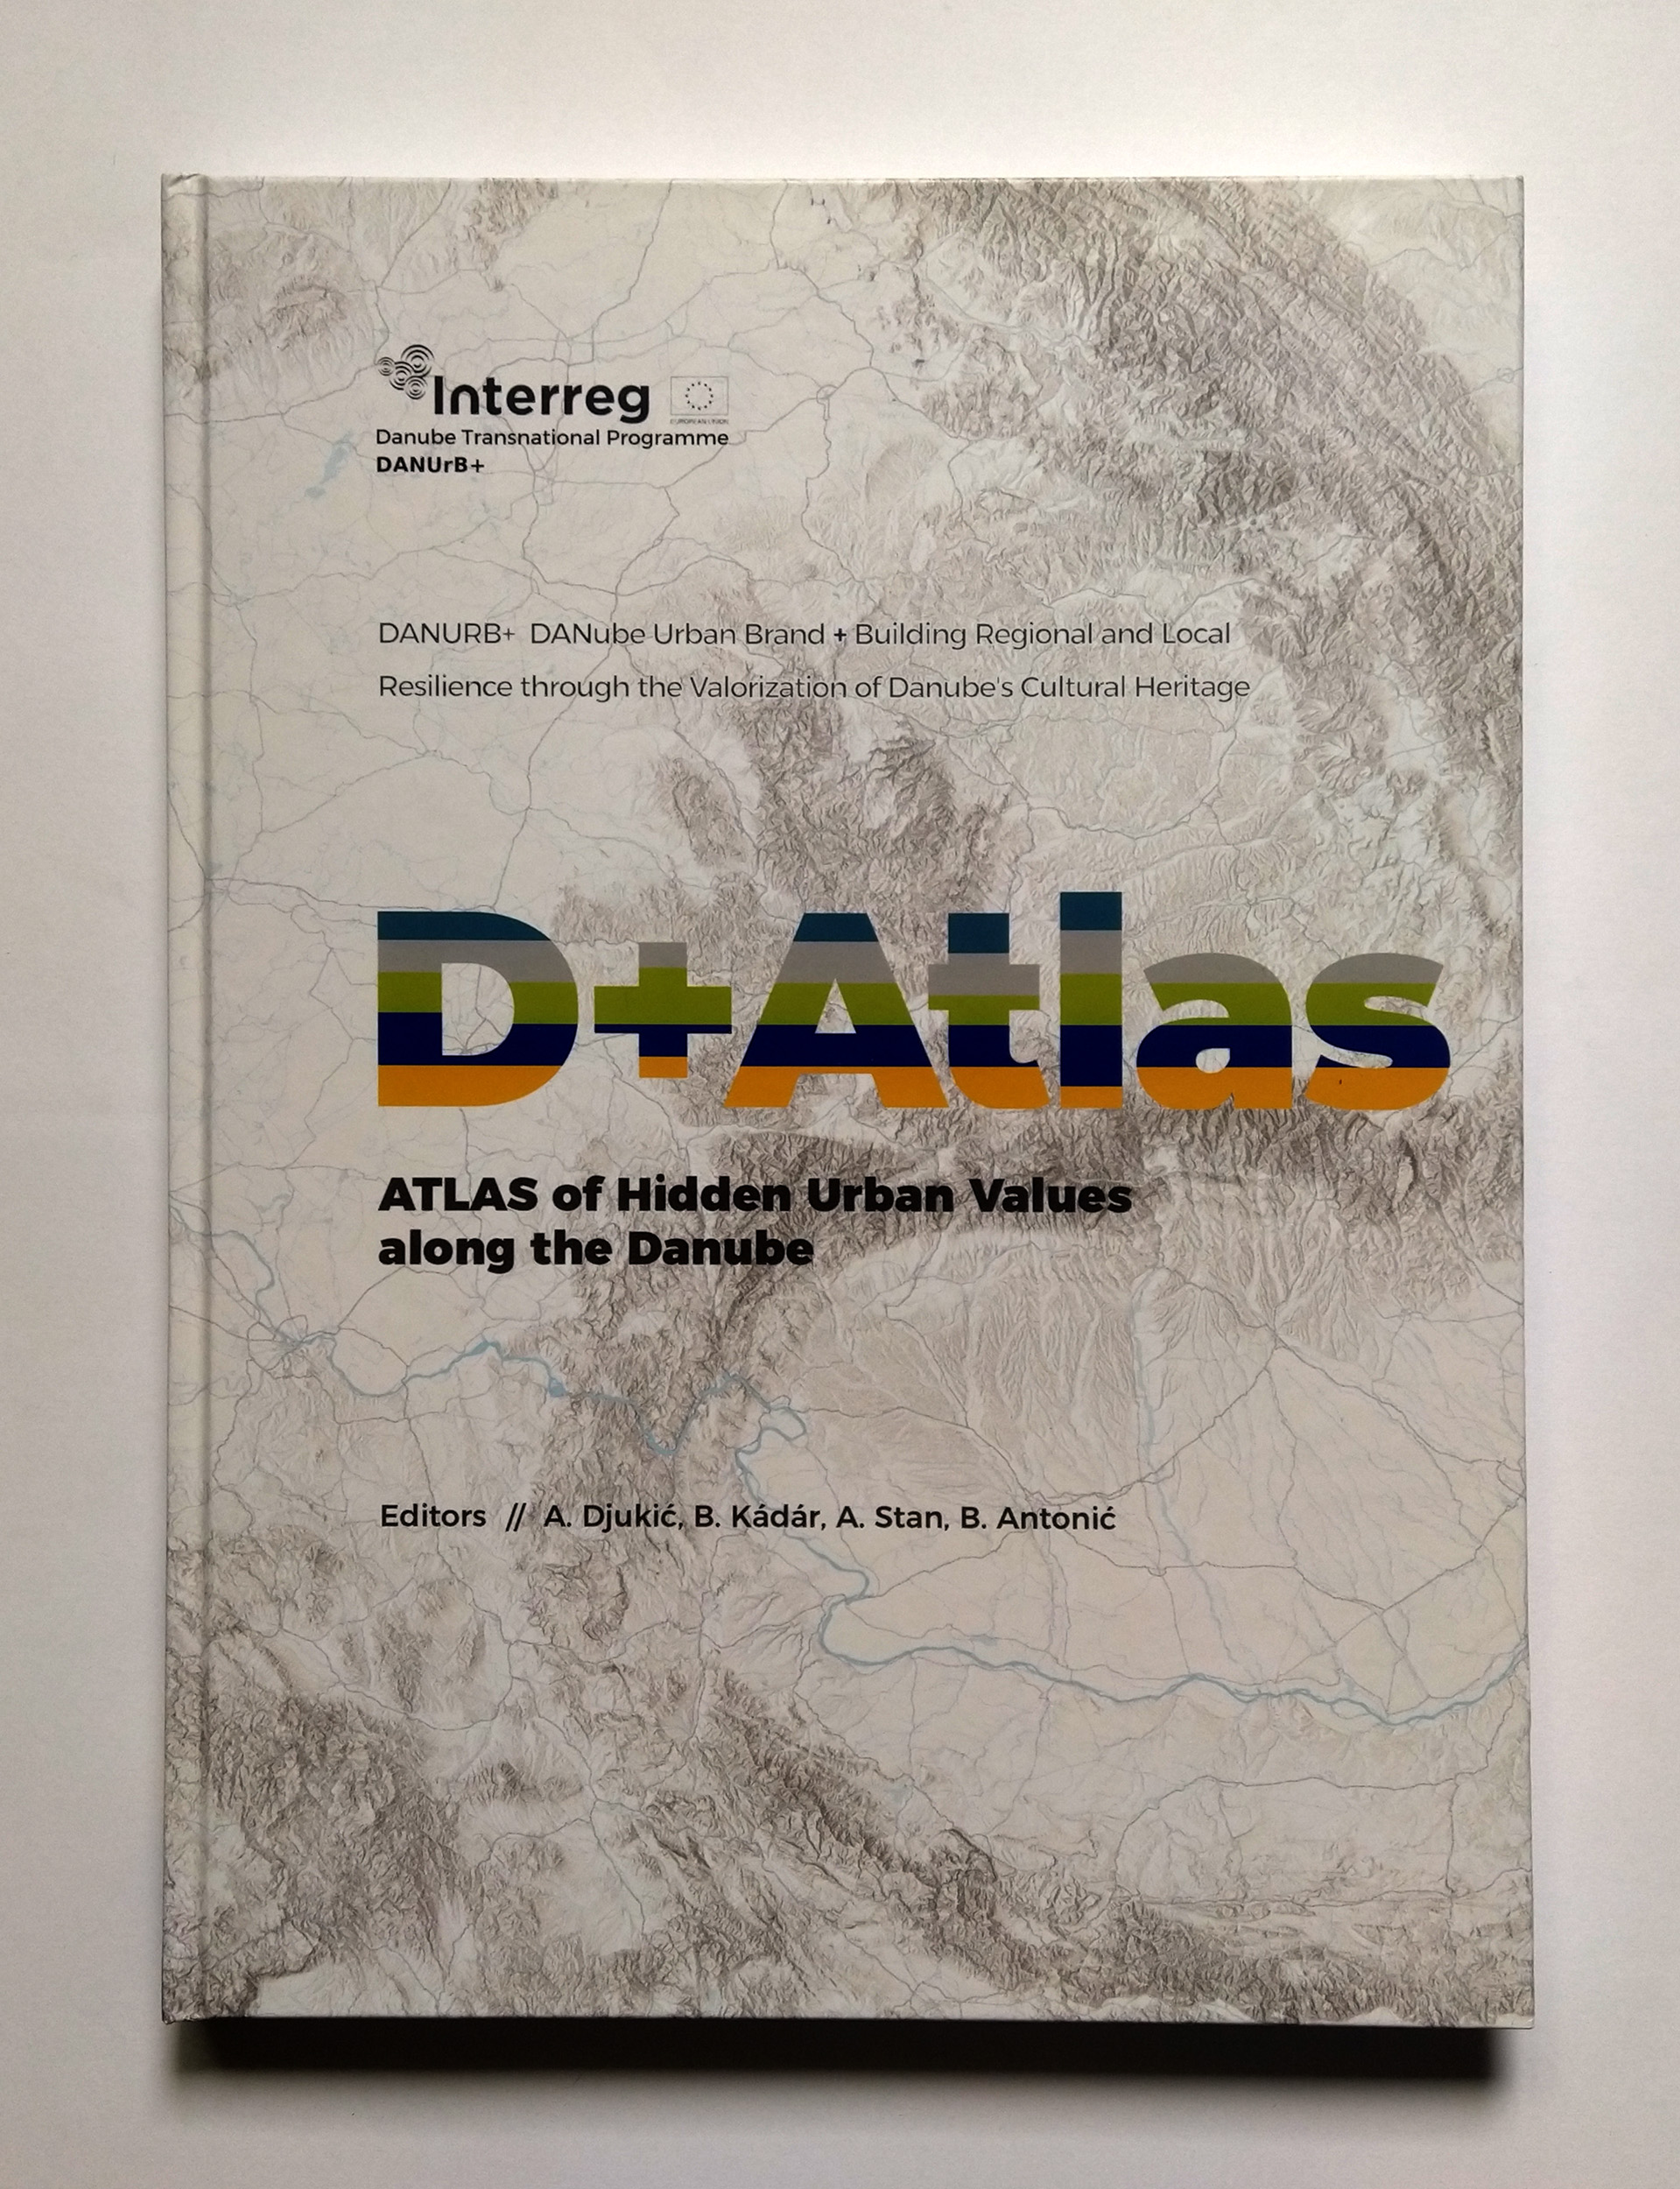 Arhitektonski fakultet u Beogradu predstavio je D+ Atlas na završnoj konferenciji DANUrB+ projekta u Budimpešti